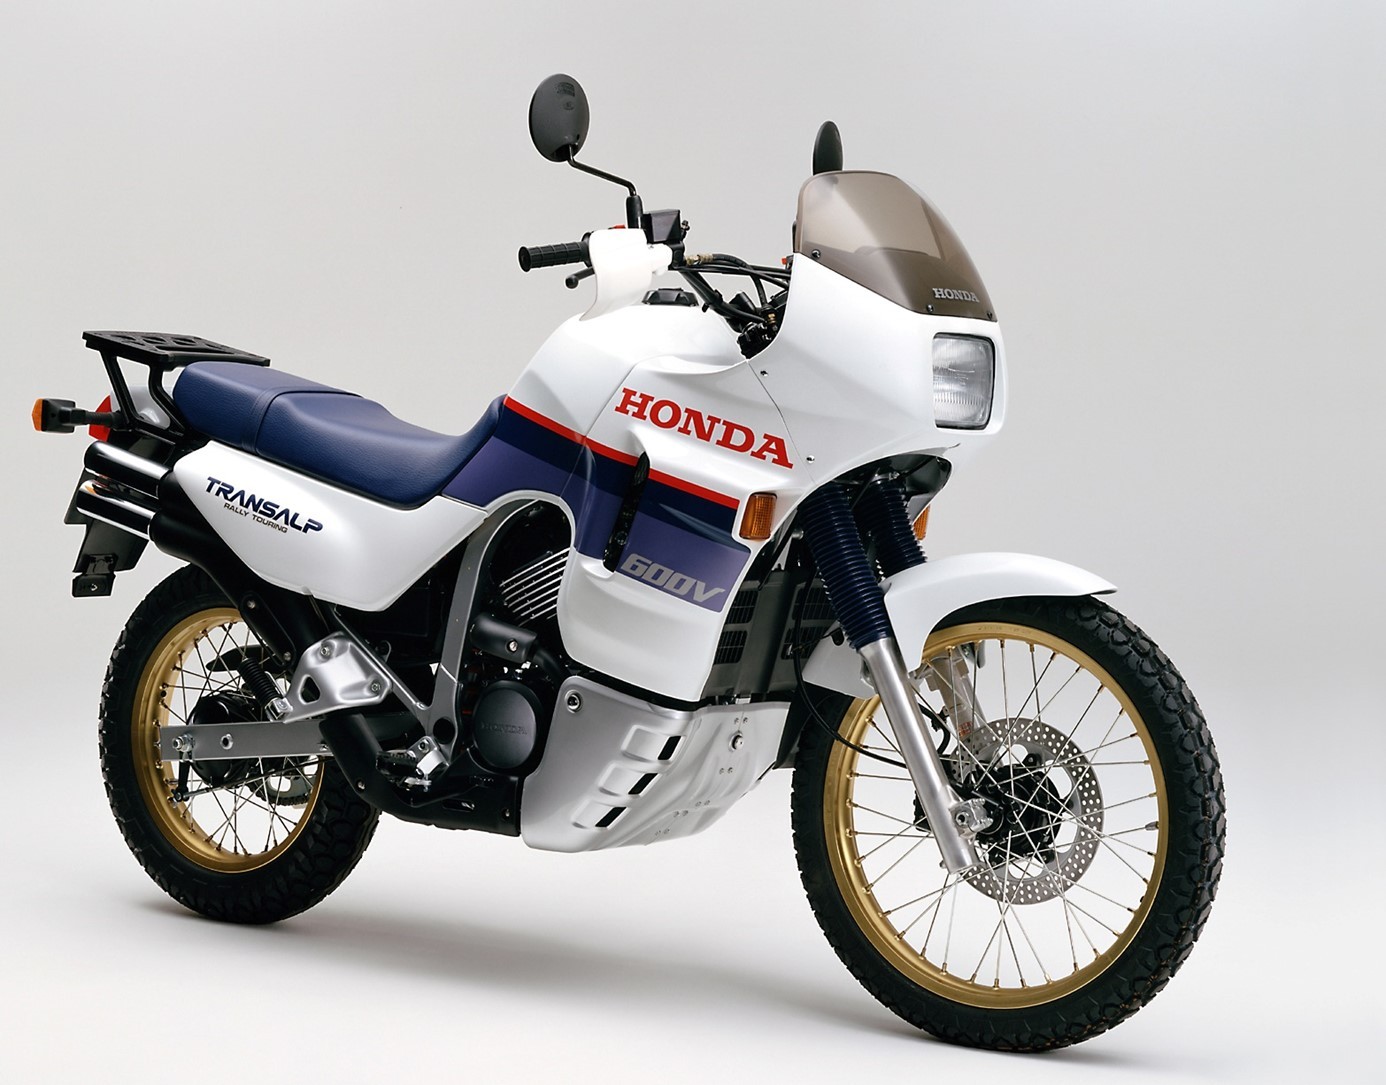 1 Honda Transalp 1987 XL600V